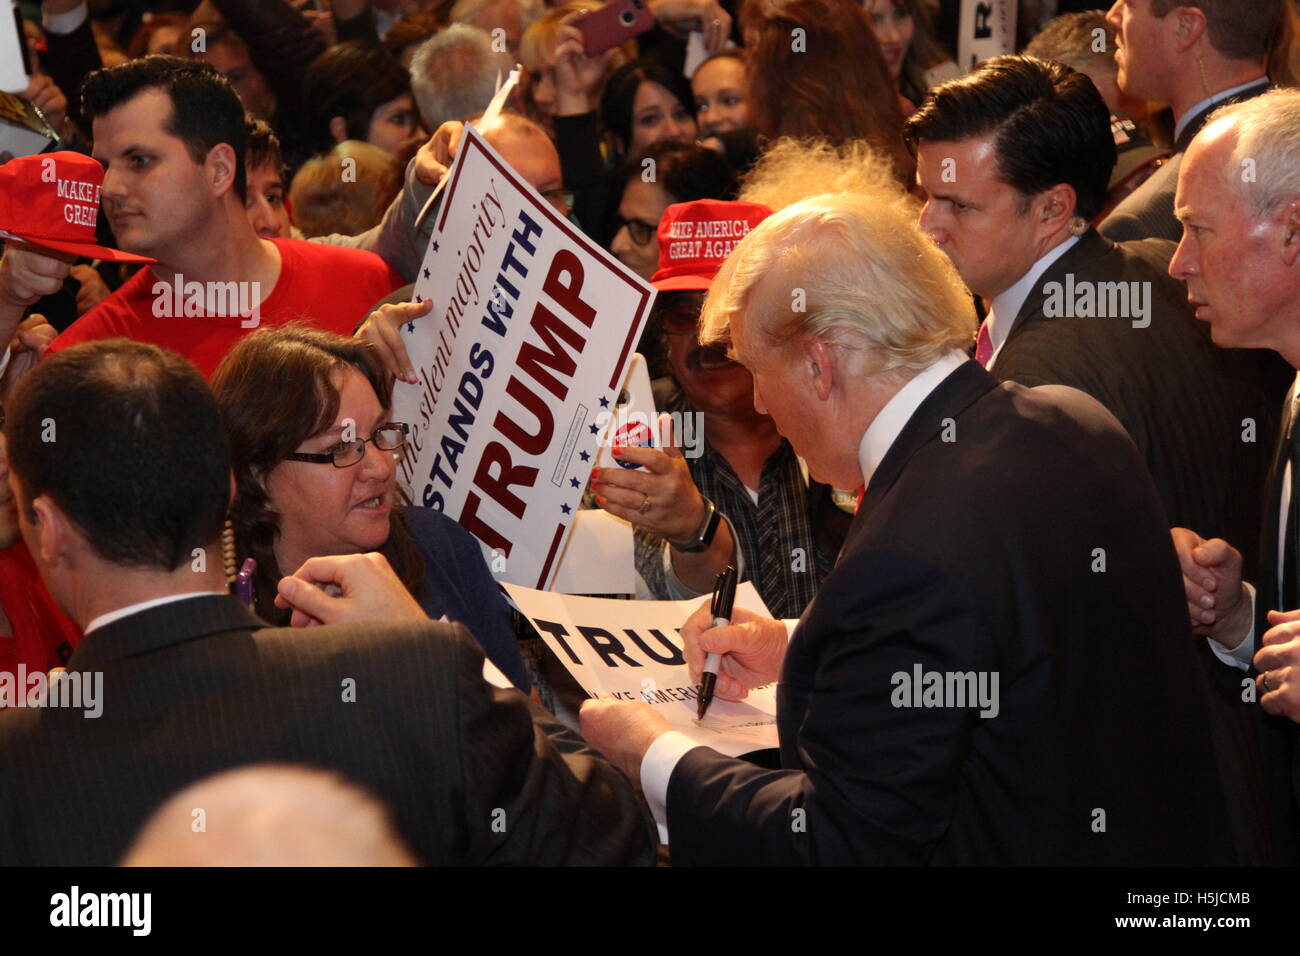 Donald J. Trump firmando autógrafos para sus seguidores en su Donald J. Trump para Presidente rally en el South Point Resort and Casino El 21 de enero de 2016 en Las Vegas, Nevada. Foto de stock